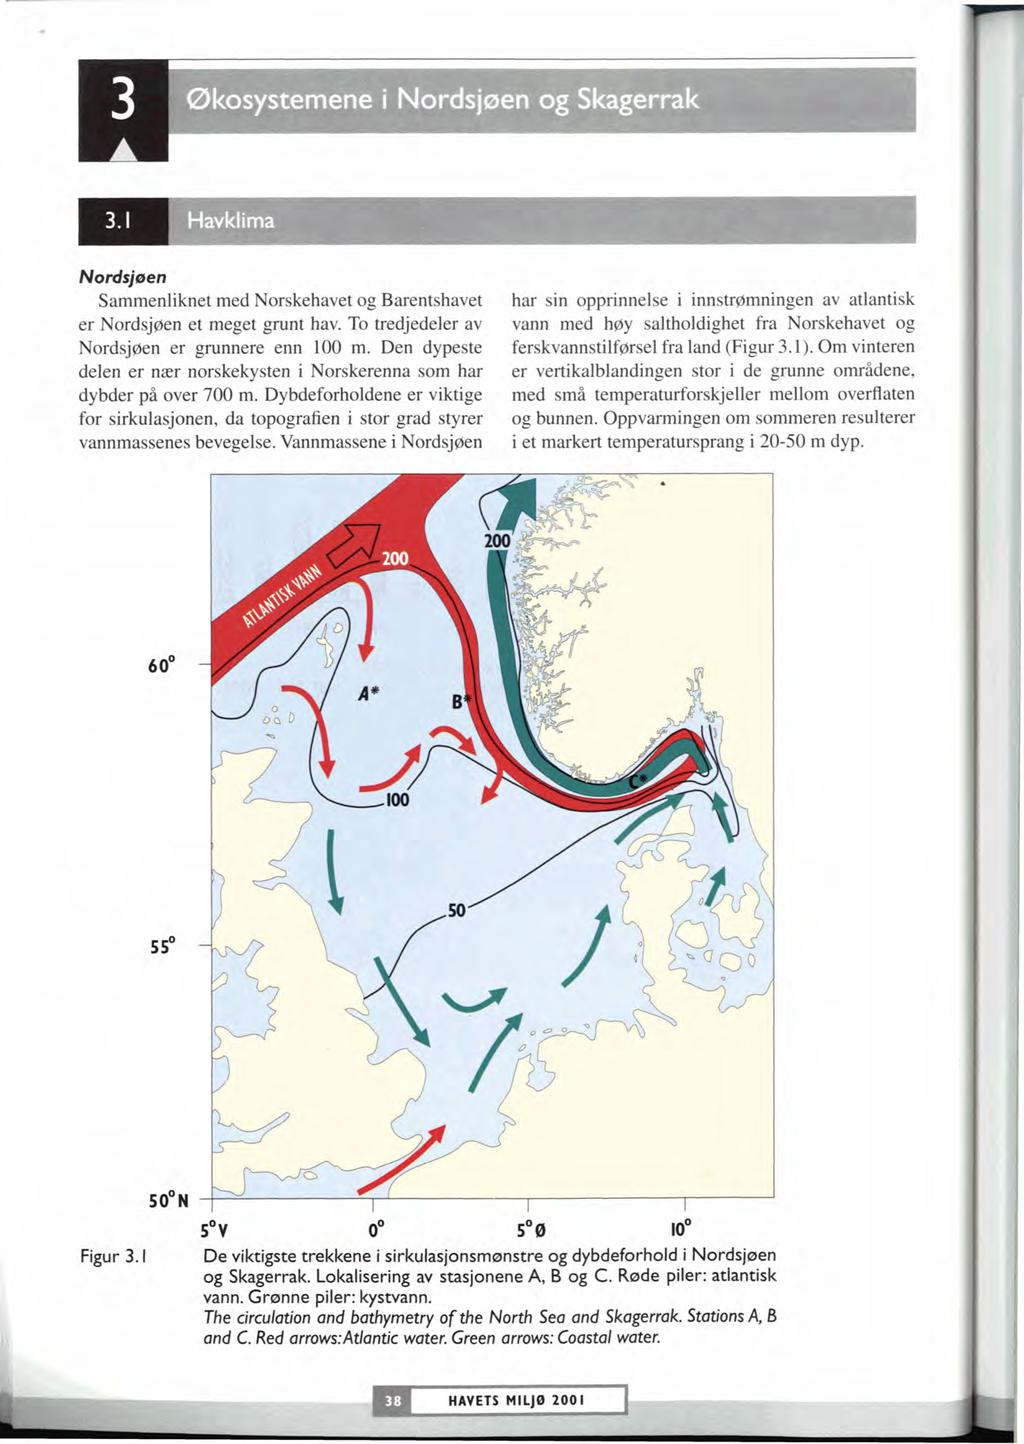 m m m Økosystemene i Nordsjøen og 5kagerrak I Nordsjsen Sammenliknet med Norskehavet og Barentshavet er Nordsjøen et meget grunt hav. To tredjedeler av Nordsjøen er grunnere enn 100 m.